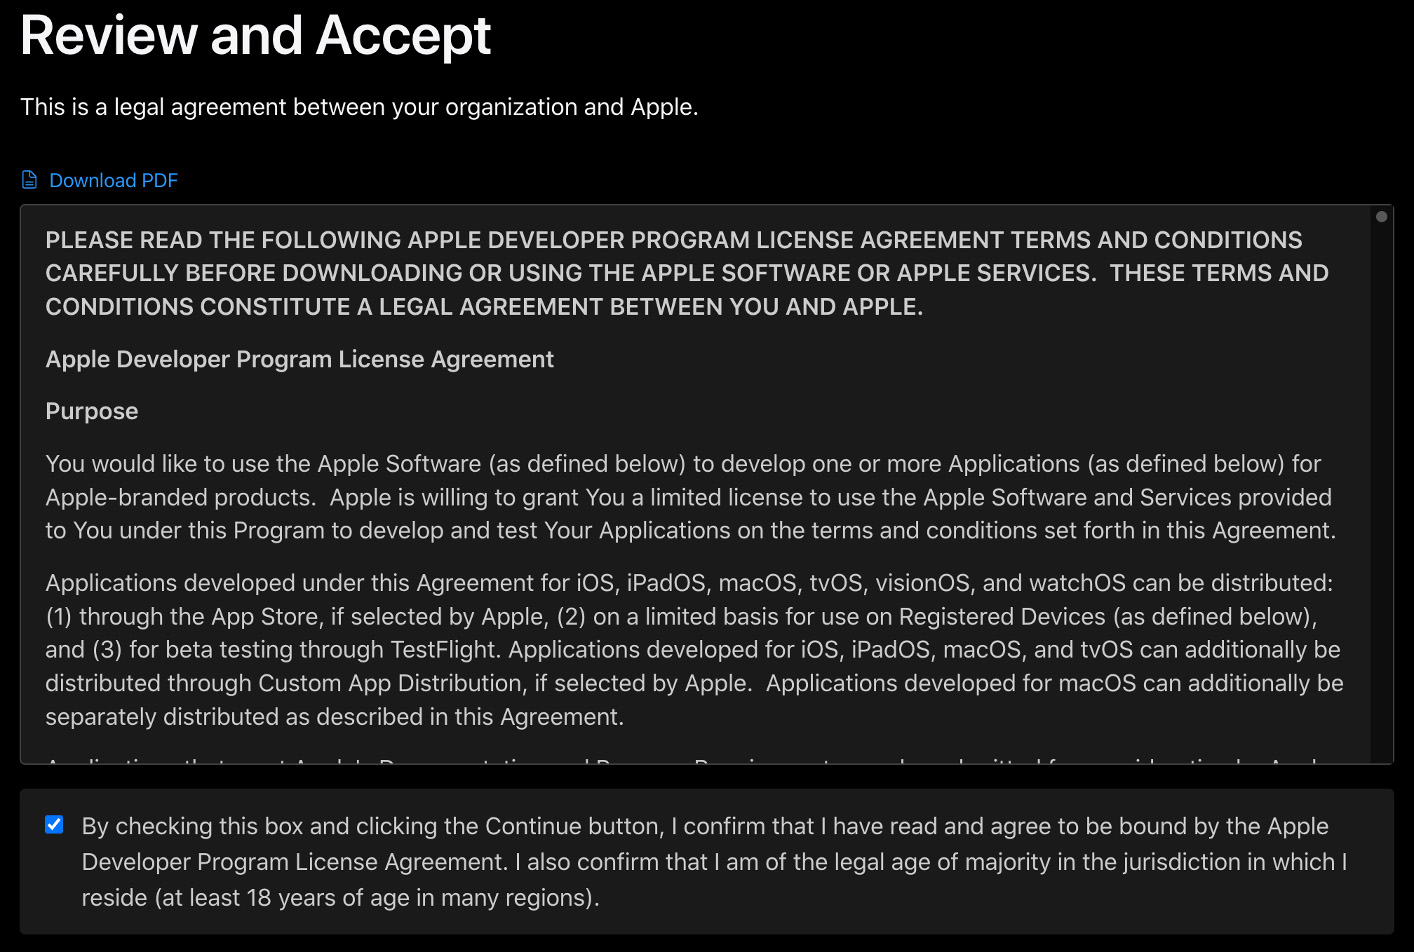 Apple Developer Program license agreement